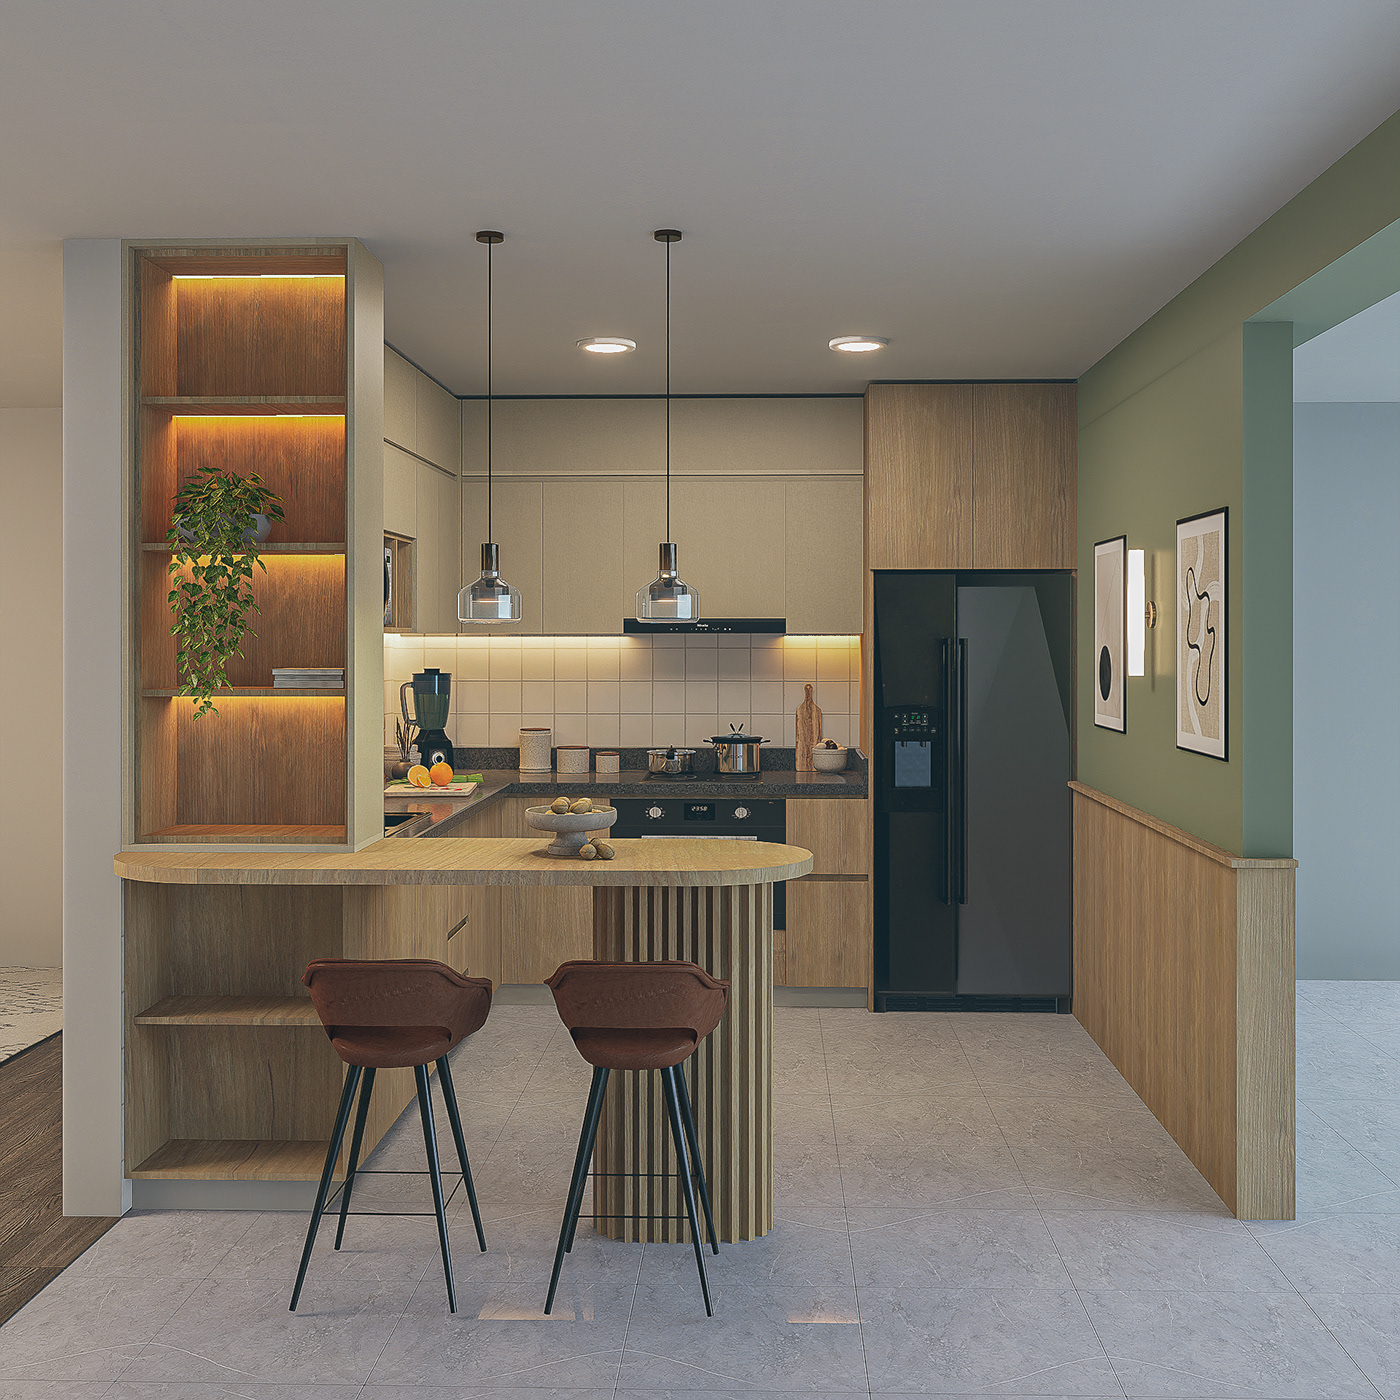 Diseño de Interiores modelado arquitectonico D5 Render cocina diseño de mobiliario render arquitectura